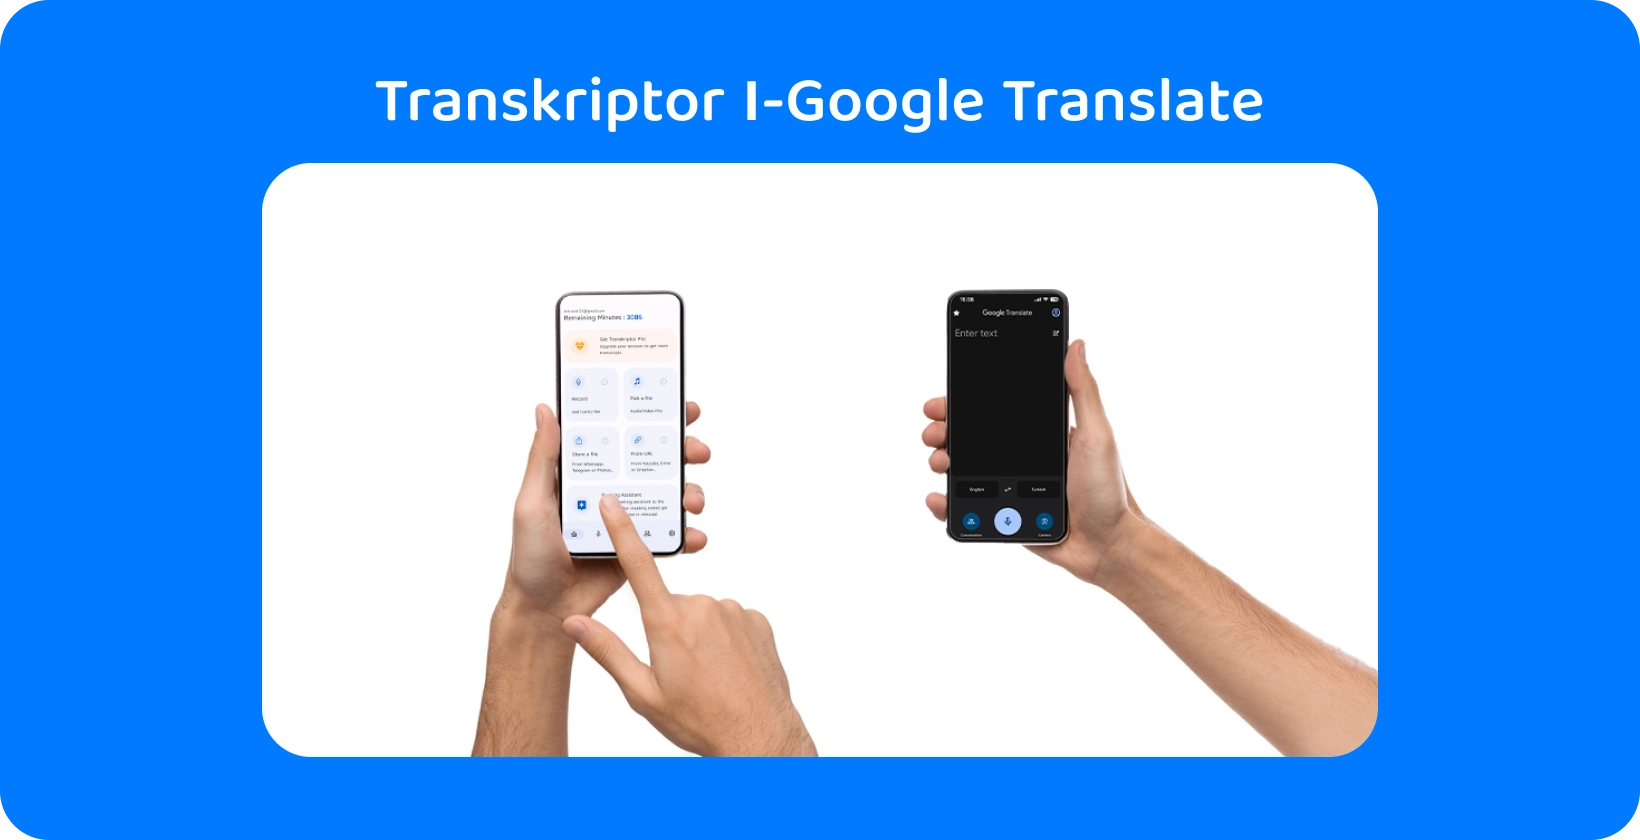 שתי ידיים אוחזות בסמארטפונים עם Transkriptor ו-Google Translate, המדגימות תמלול אודיו ותרגום.